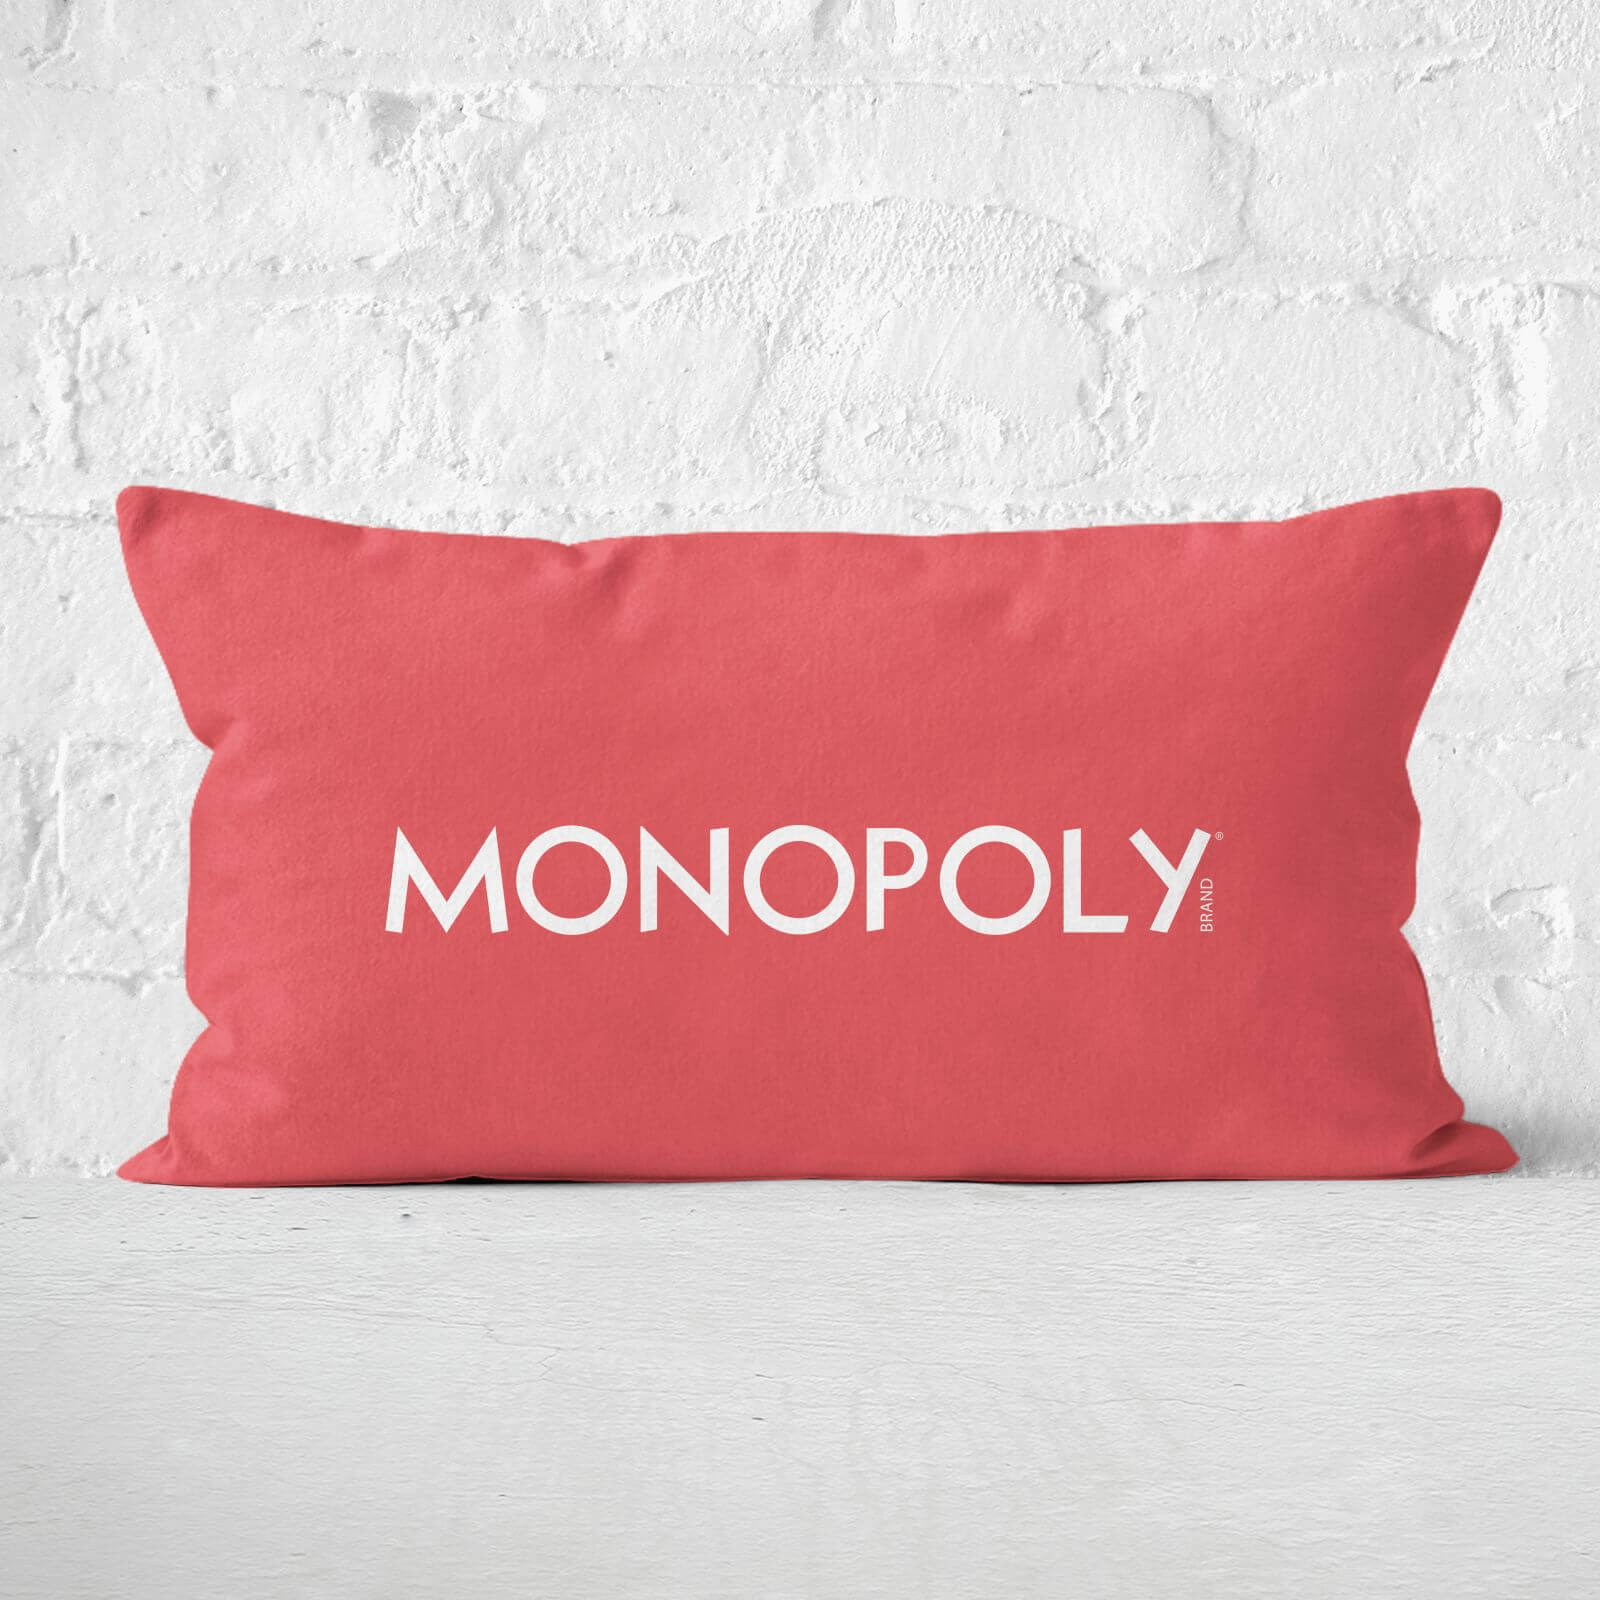 Monopoly Go Cushion 30x50cm Rectangular Cushion - Soft Touch